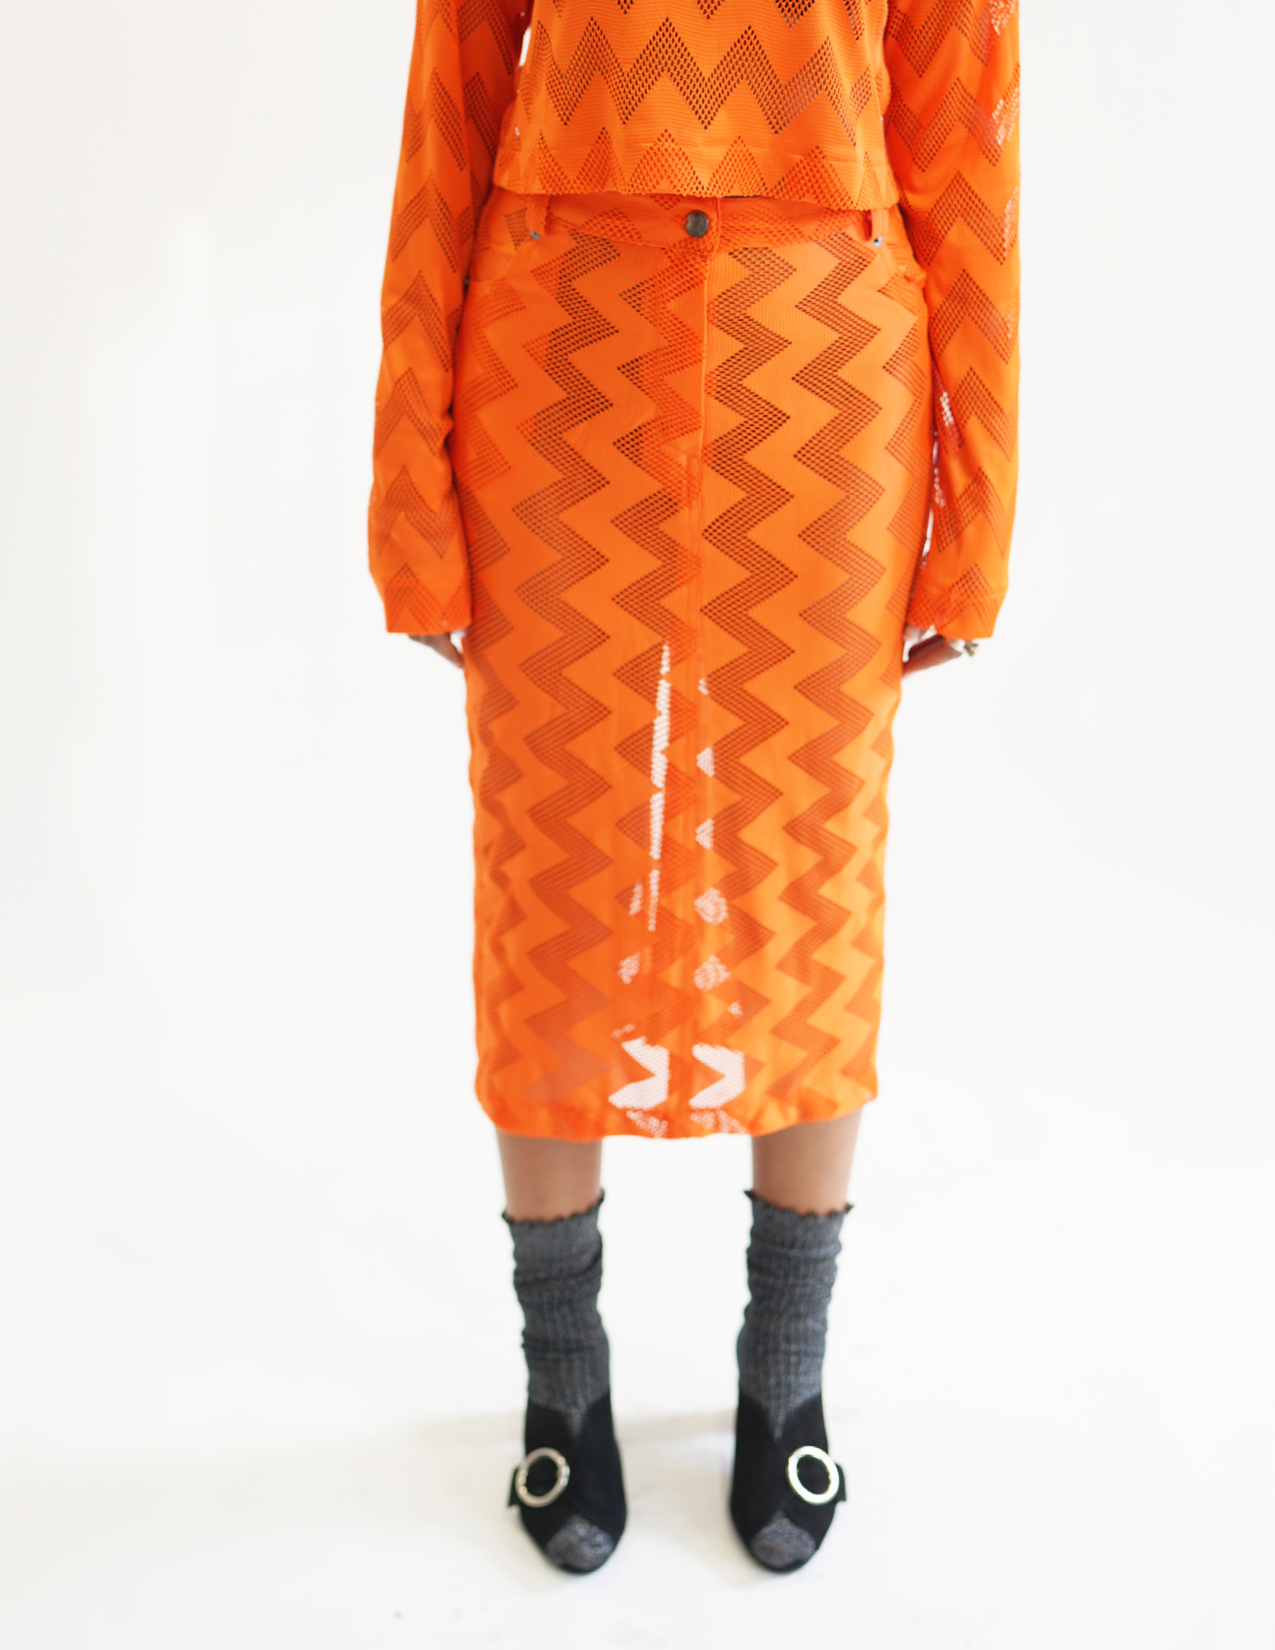 Bedford Netted Chevron Skirt  - Orange